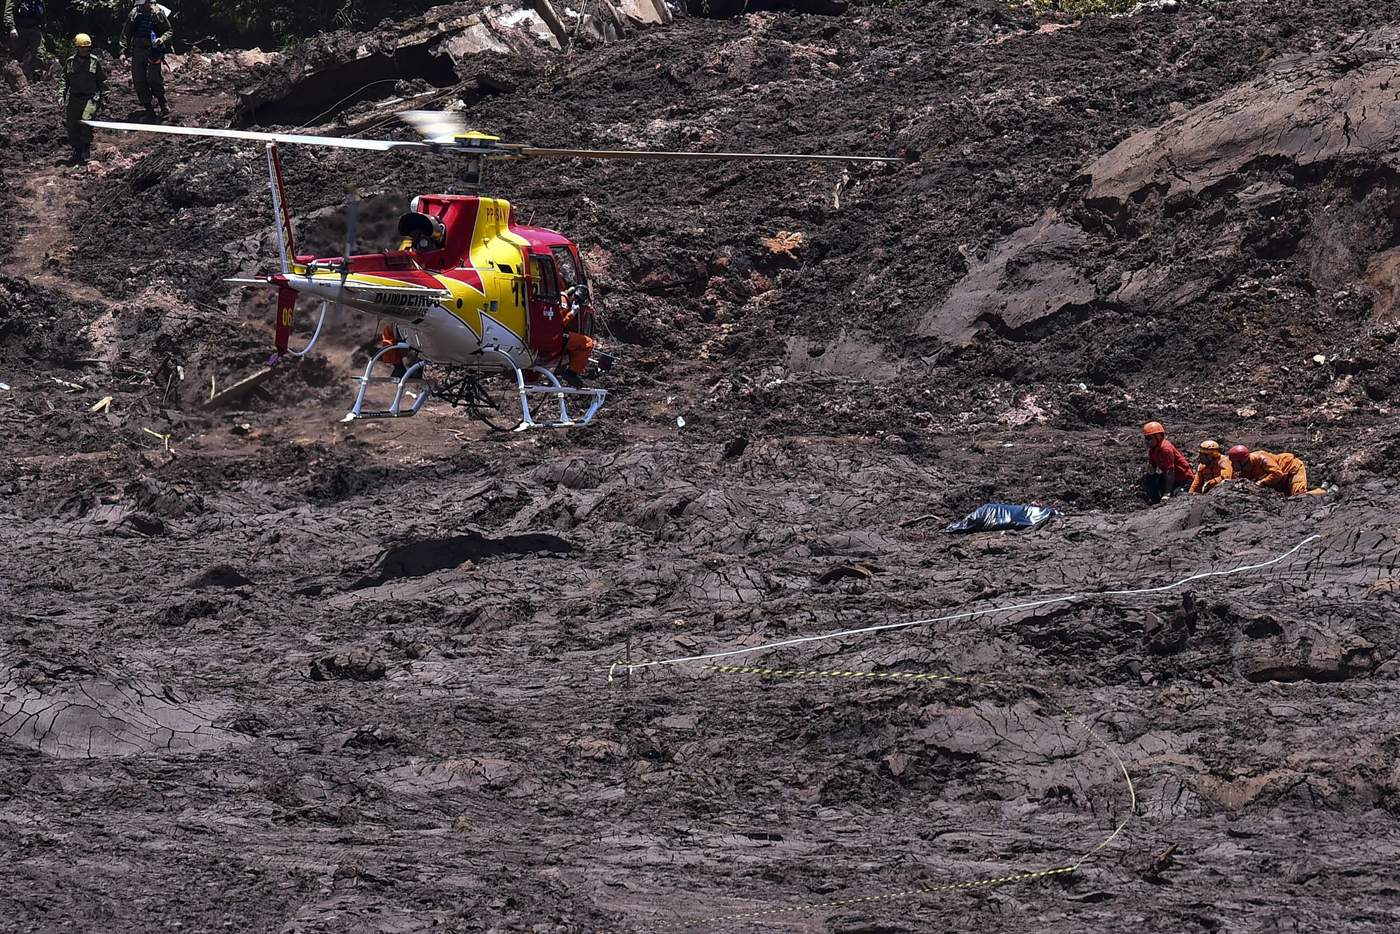 Rescatistas del cuerpo de bomberos de Minas Gerais localizaron a 11 nuevas víctimas este jueves, en el sexto día de búsqueda tras el incidente, de acuerdo con el diario local O Globo. (ARCHIVO)